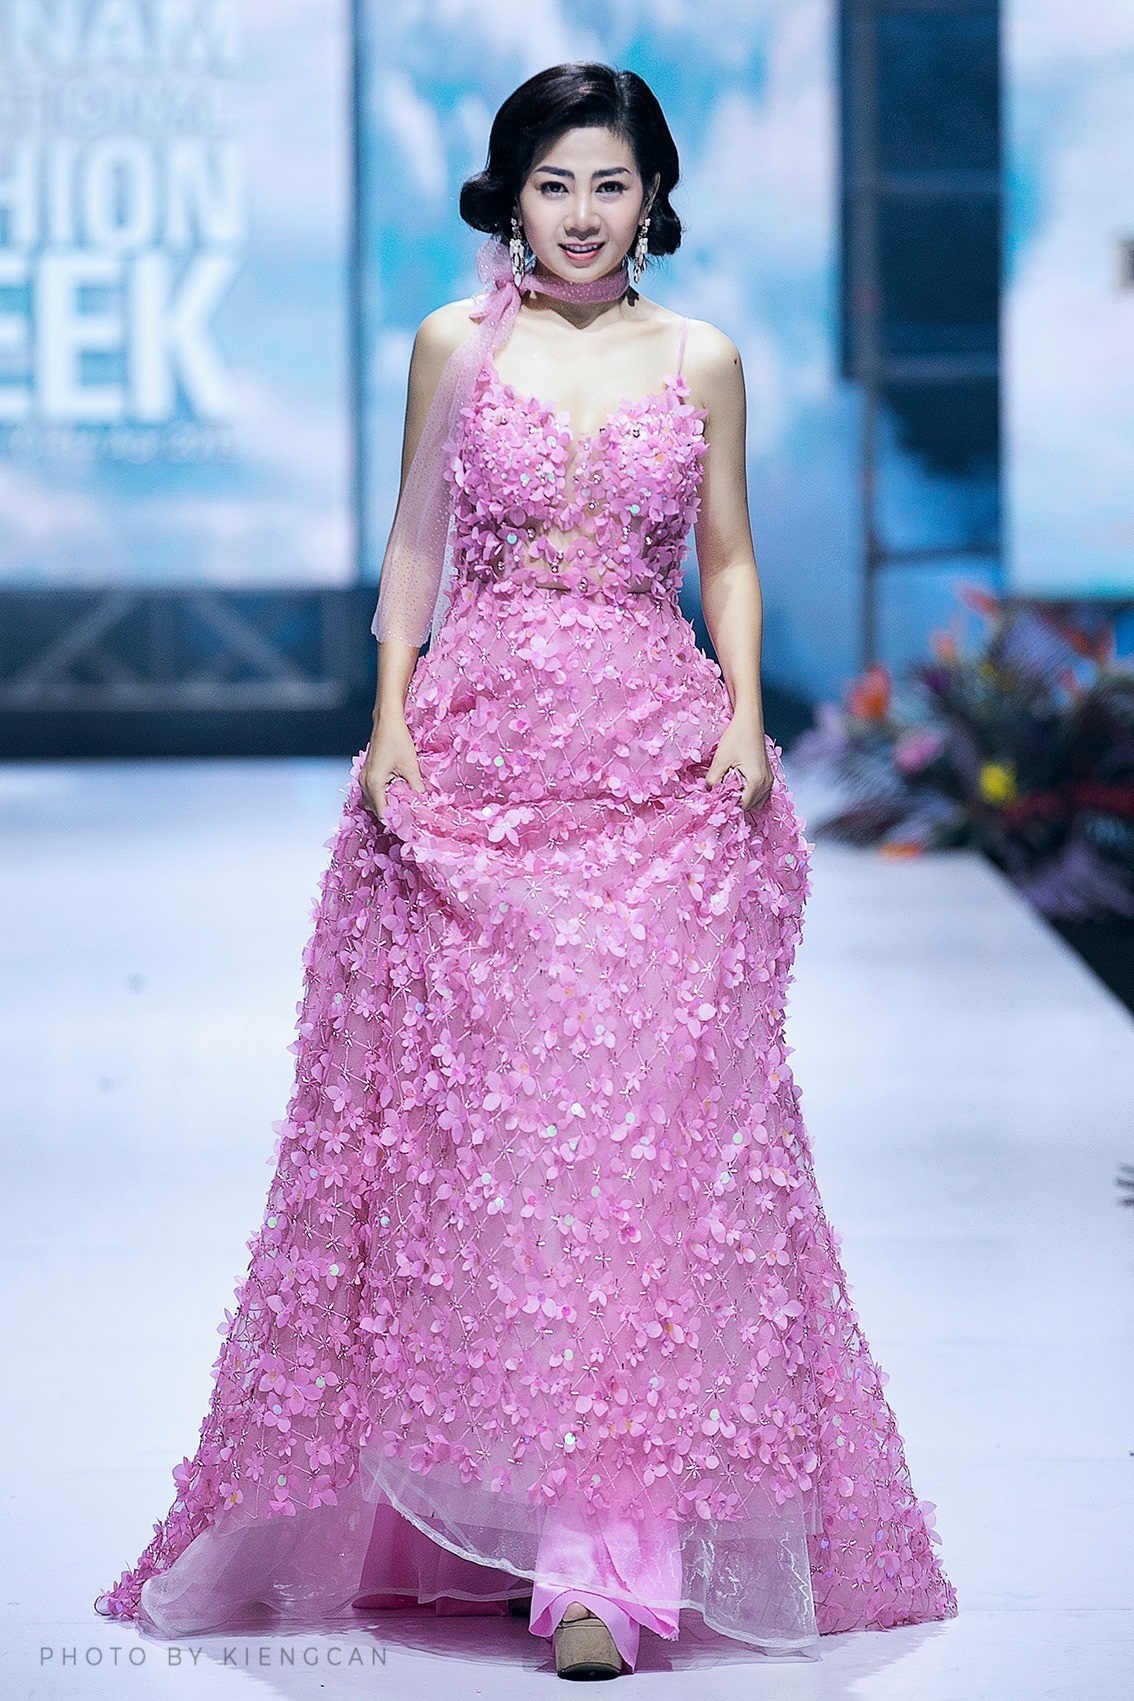 NTK Đức Vincie đấu giá chiếc váy của Mai Phương để hỗ trợ bé Lavie - Ảnh 4.